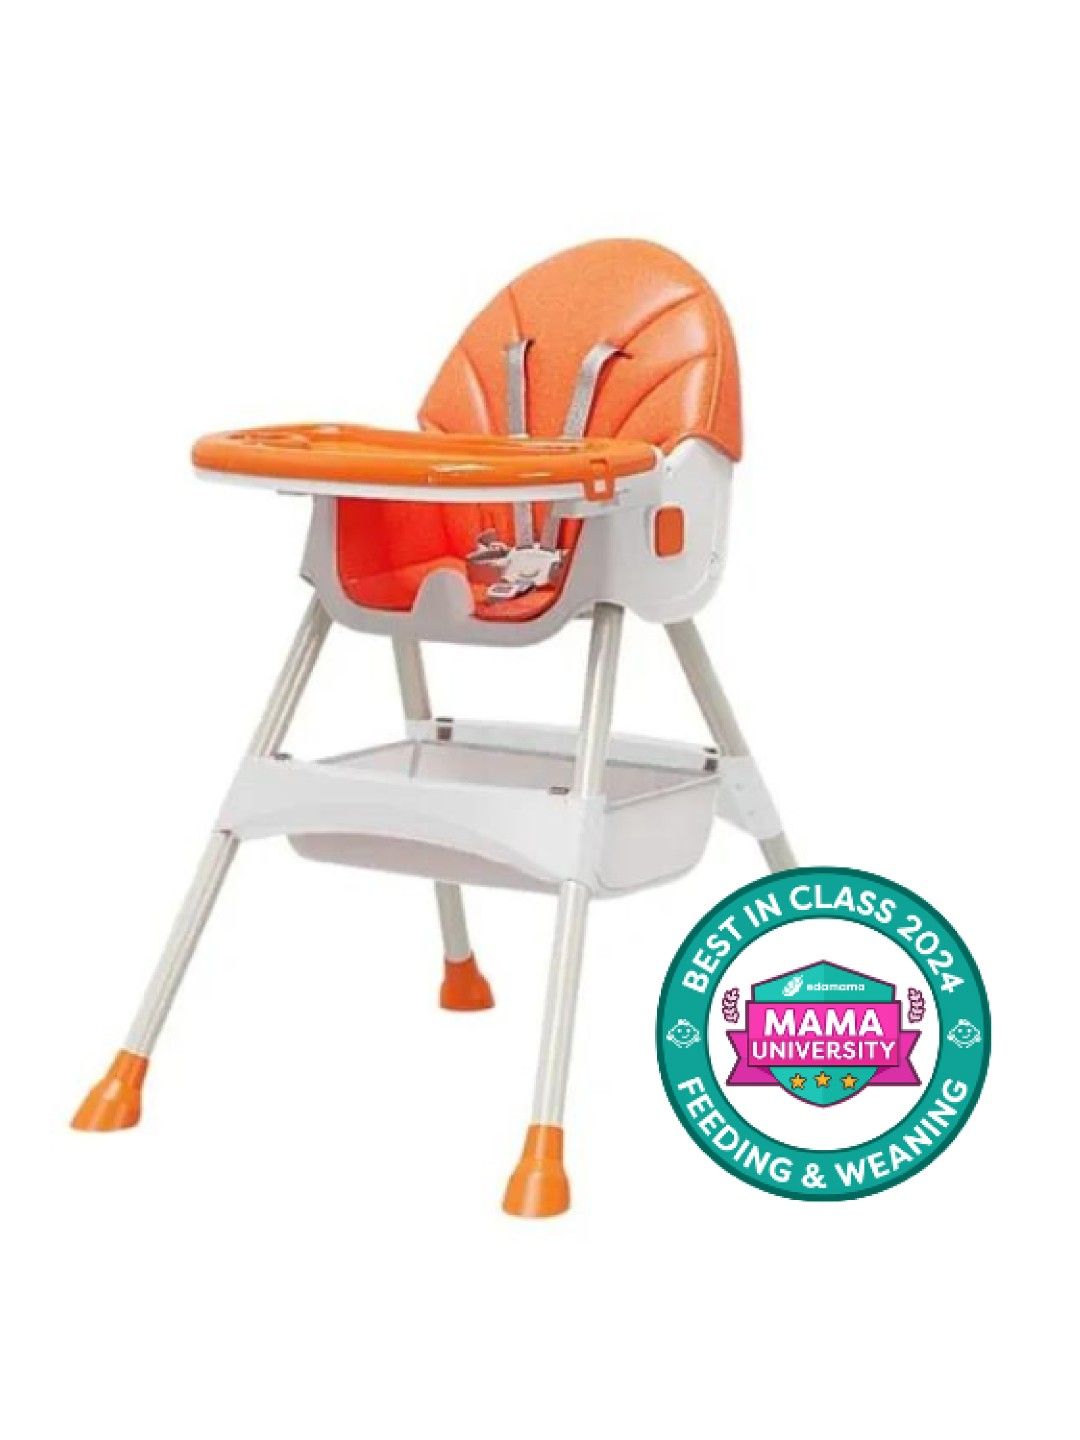 Yoboo Baby Chair - Foldable